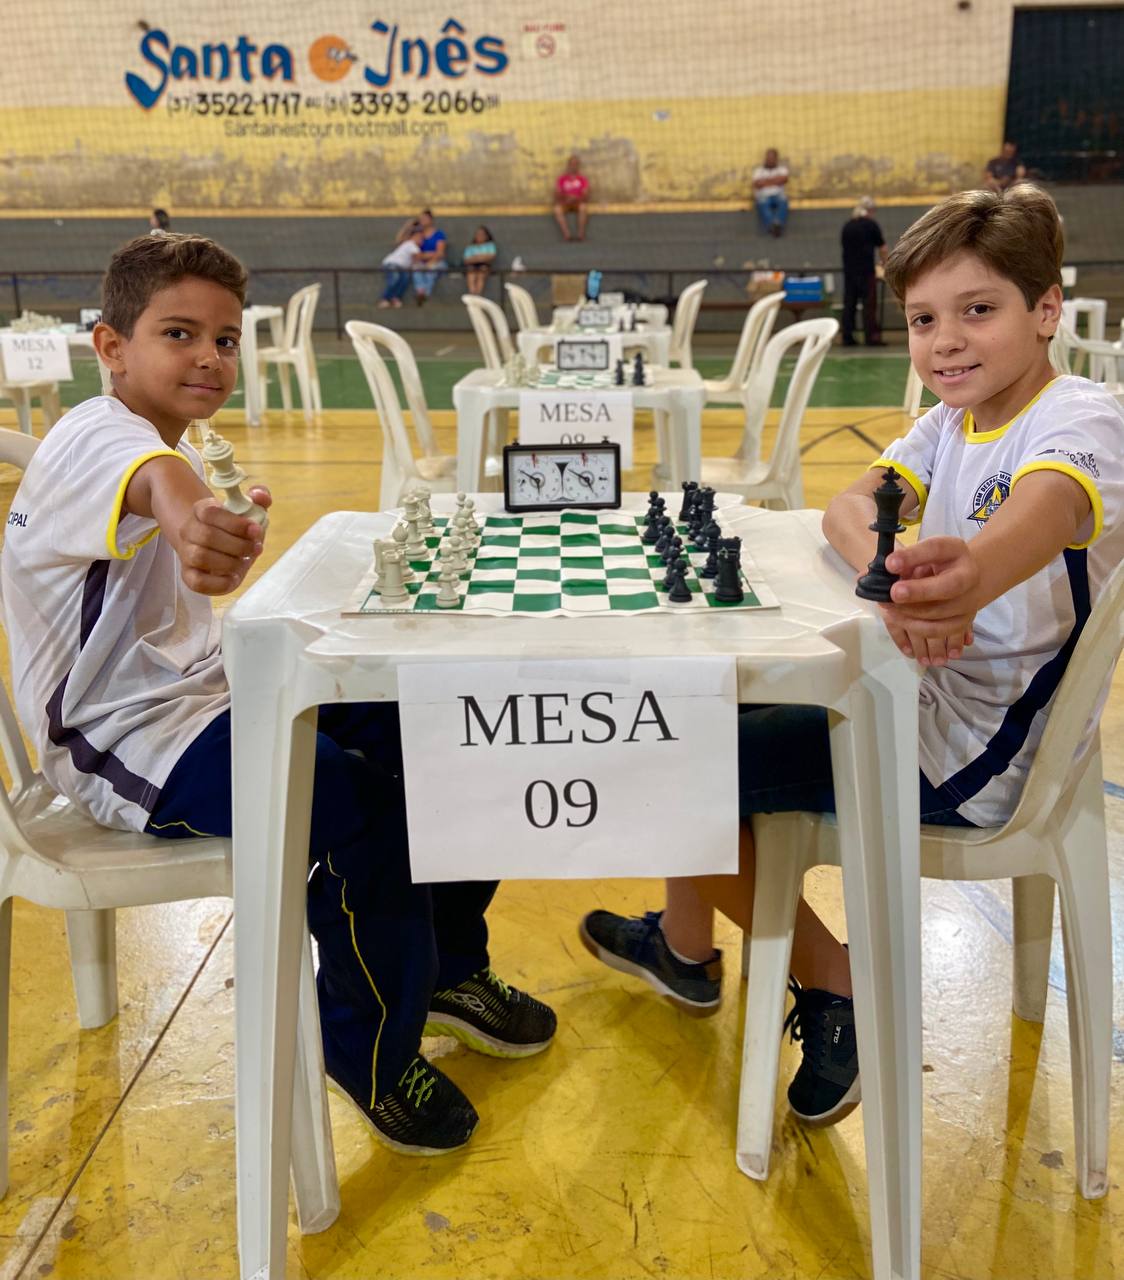 Educação abre vagas para instrutores de xadrez — Prefeitura